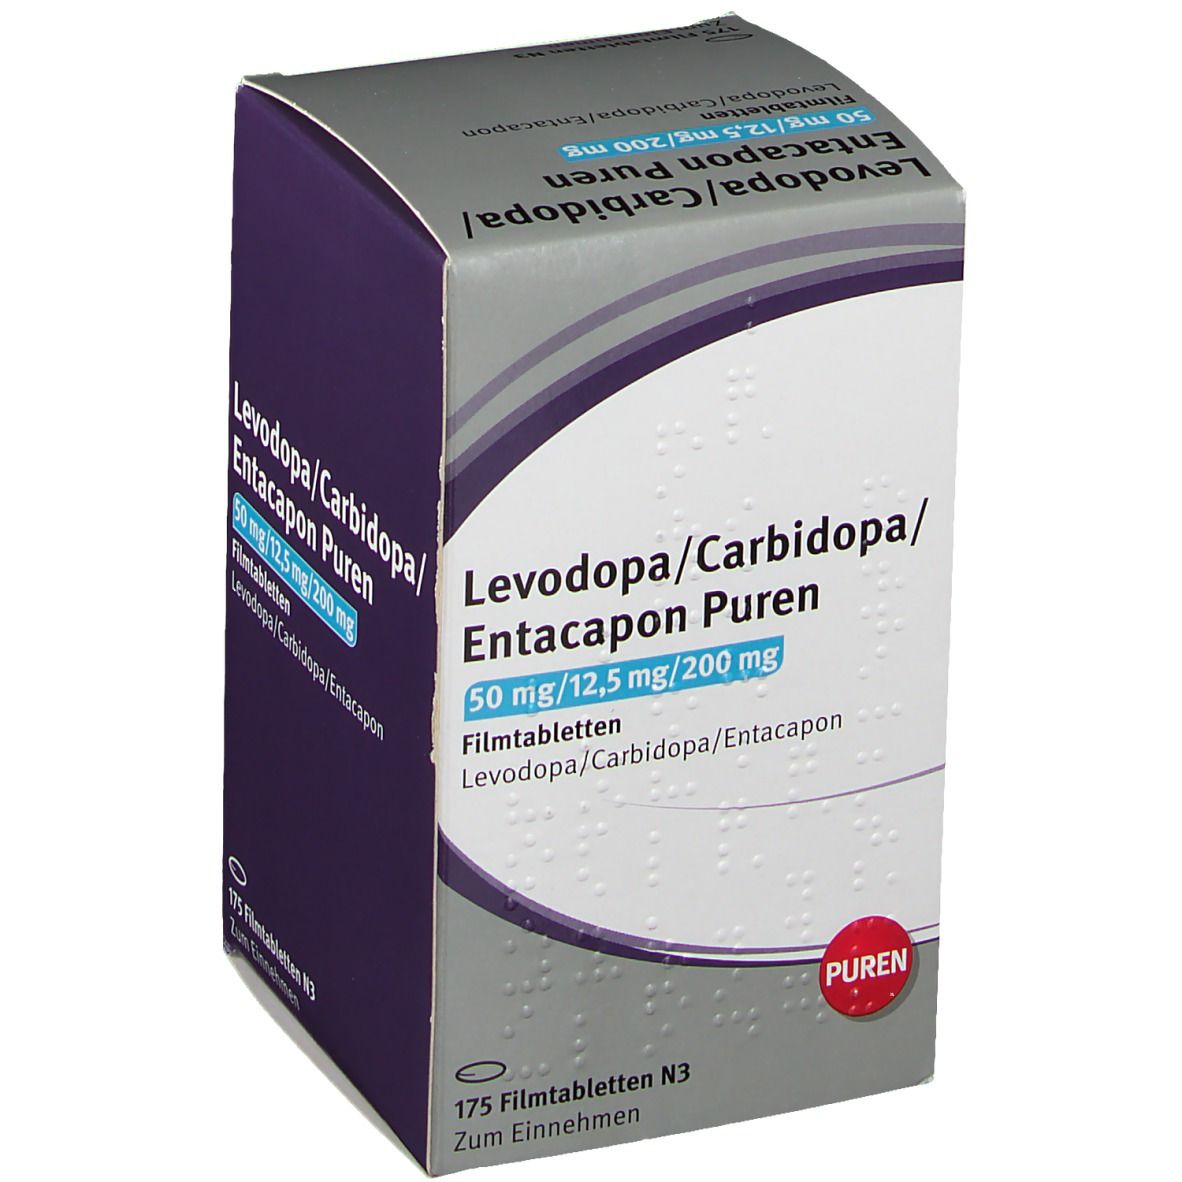 Levodopa/Carbidopa/Entacapon PUREN 50/12,5/200